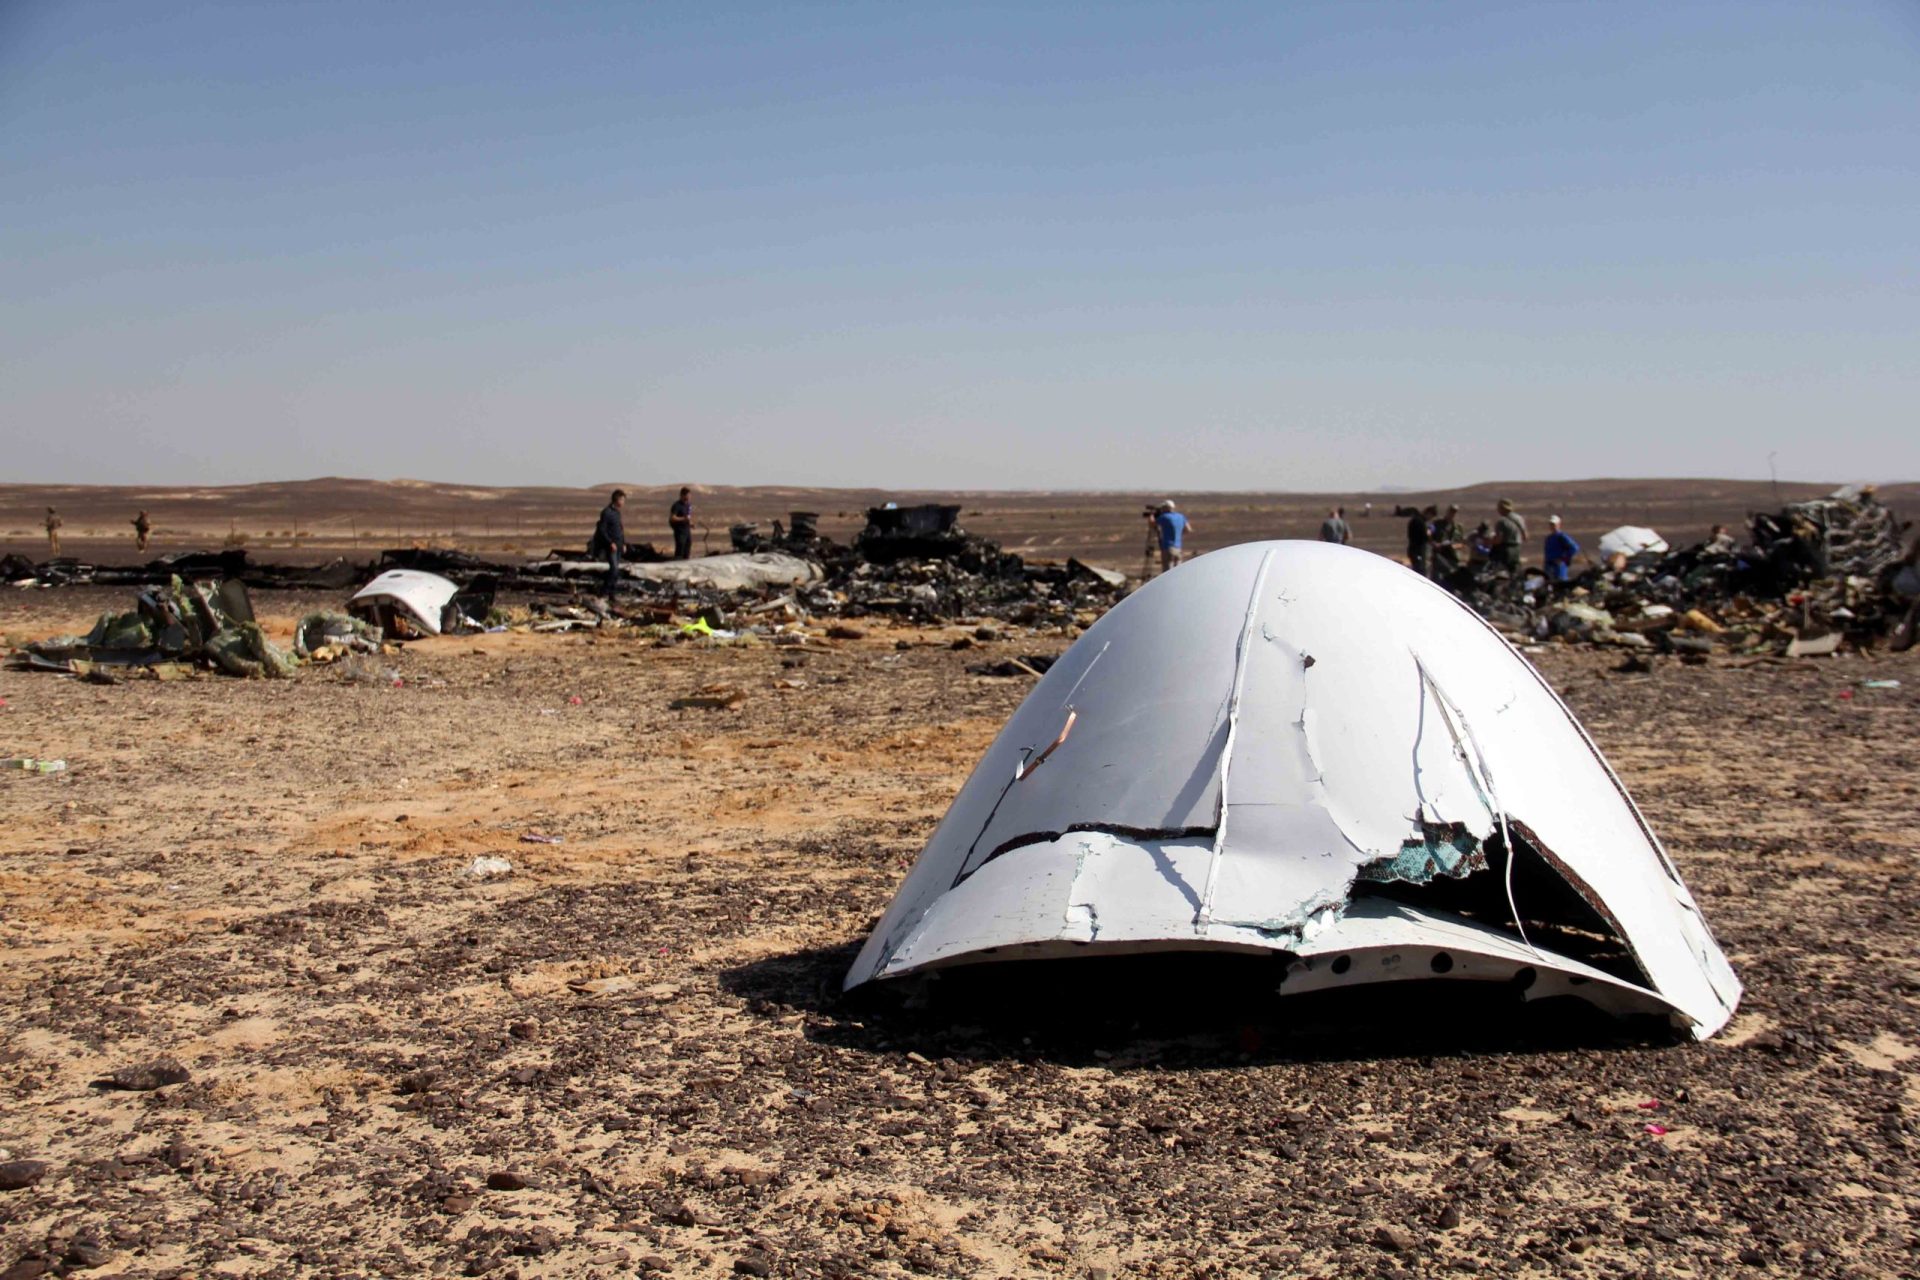 Egito/Avião: caixa negra confirma violência e caráter rápido do incidente